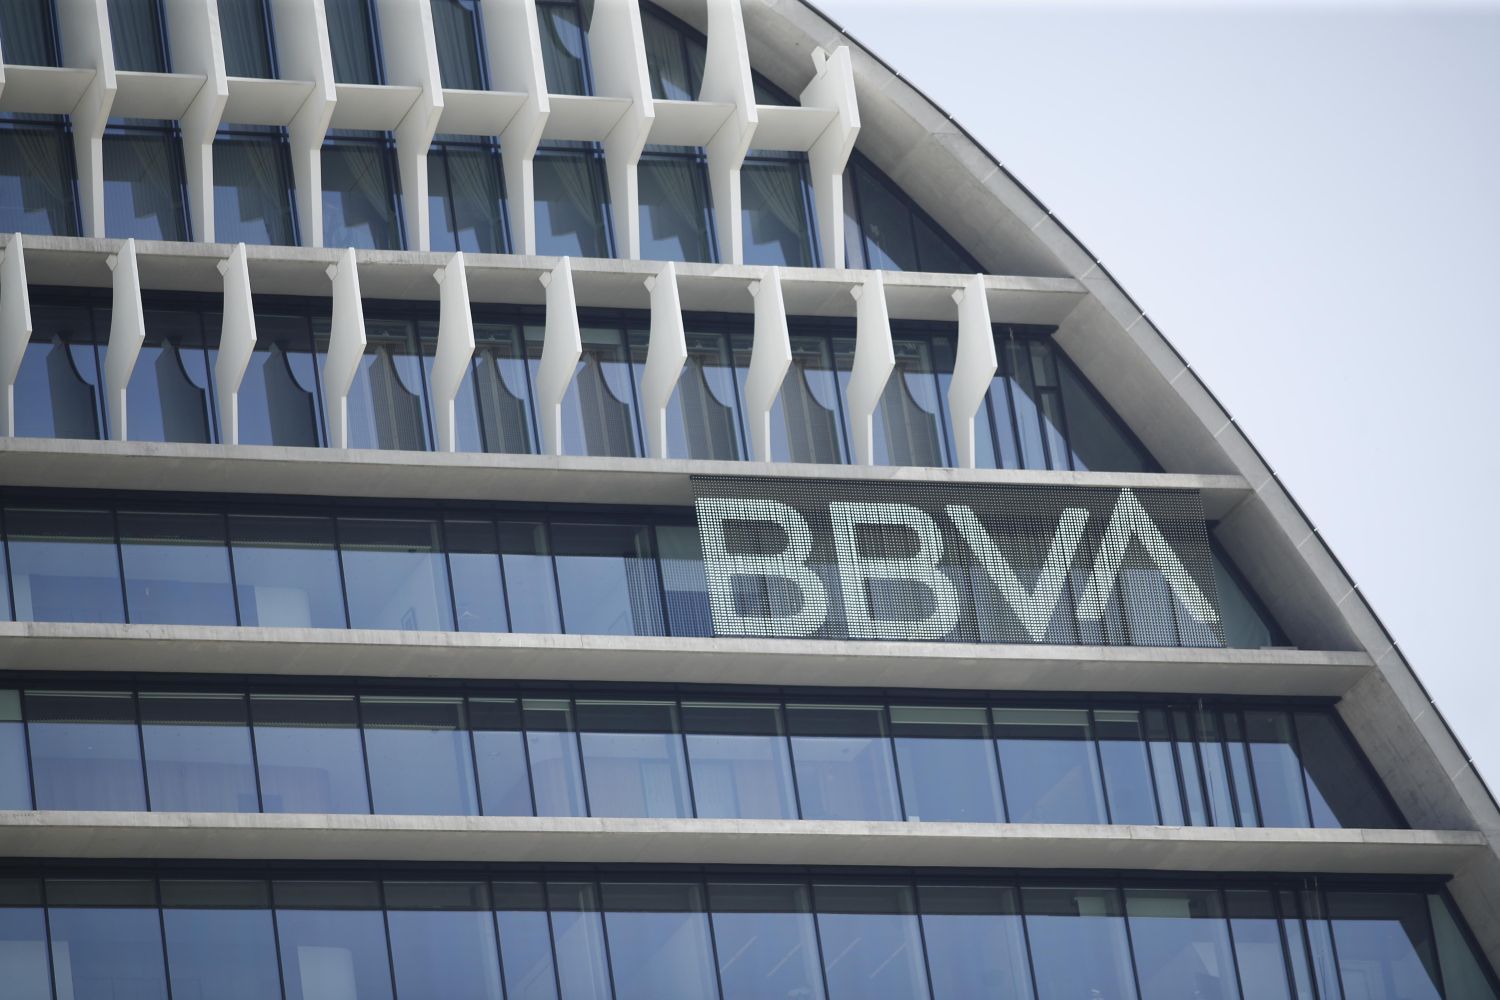 La negociación Banco Sabadell-BBVA engrasa la maquinaria de los sindicatos